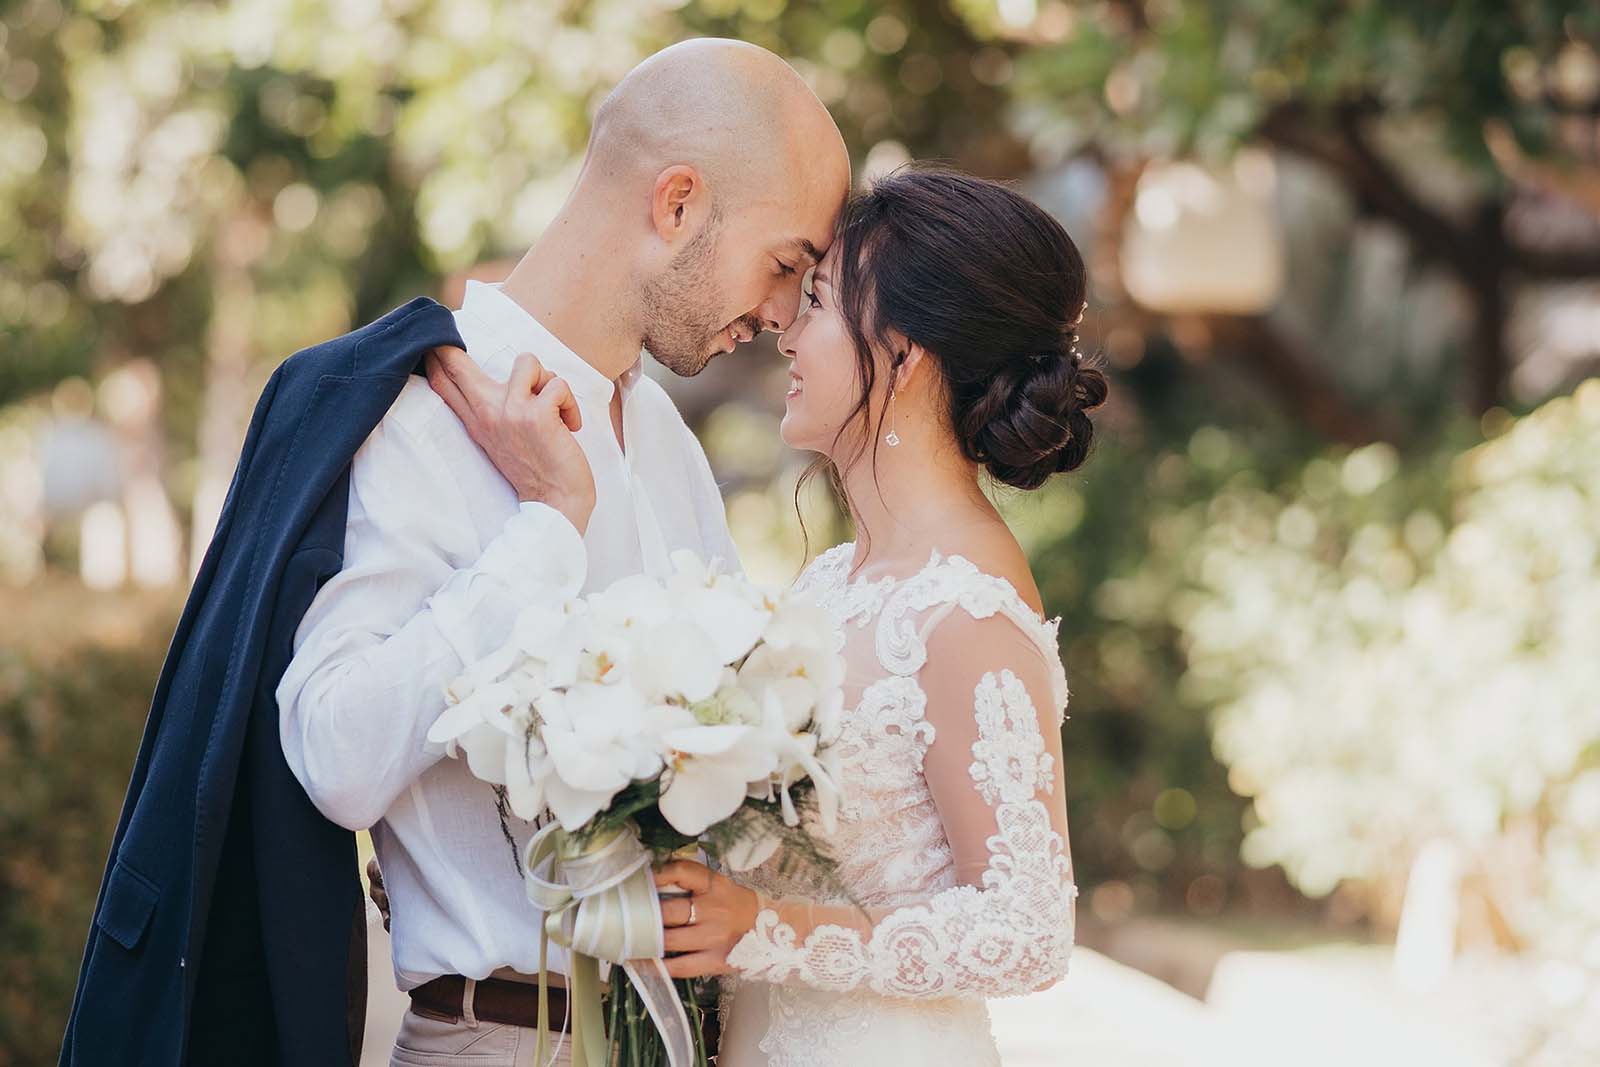 Das Brautpaar steht sich eng gegenüber und blickt sich in die Augen. Die Braut hält einen Brautstrauß aus weißen Orchideen in der Hand.